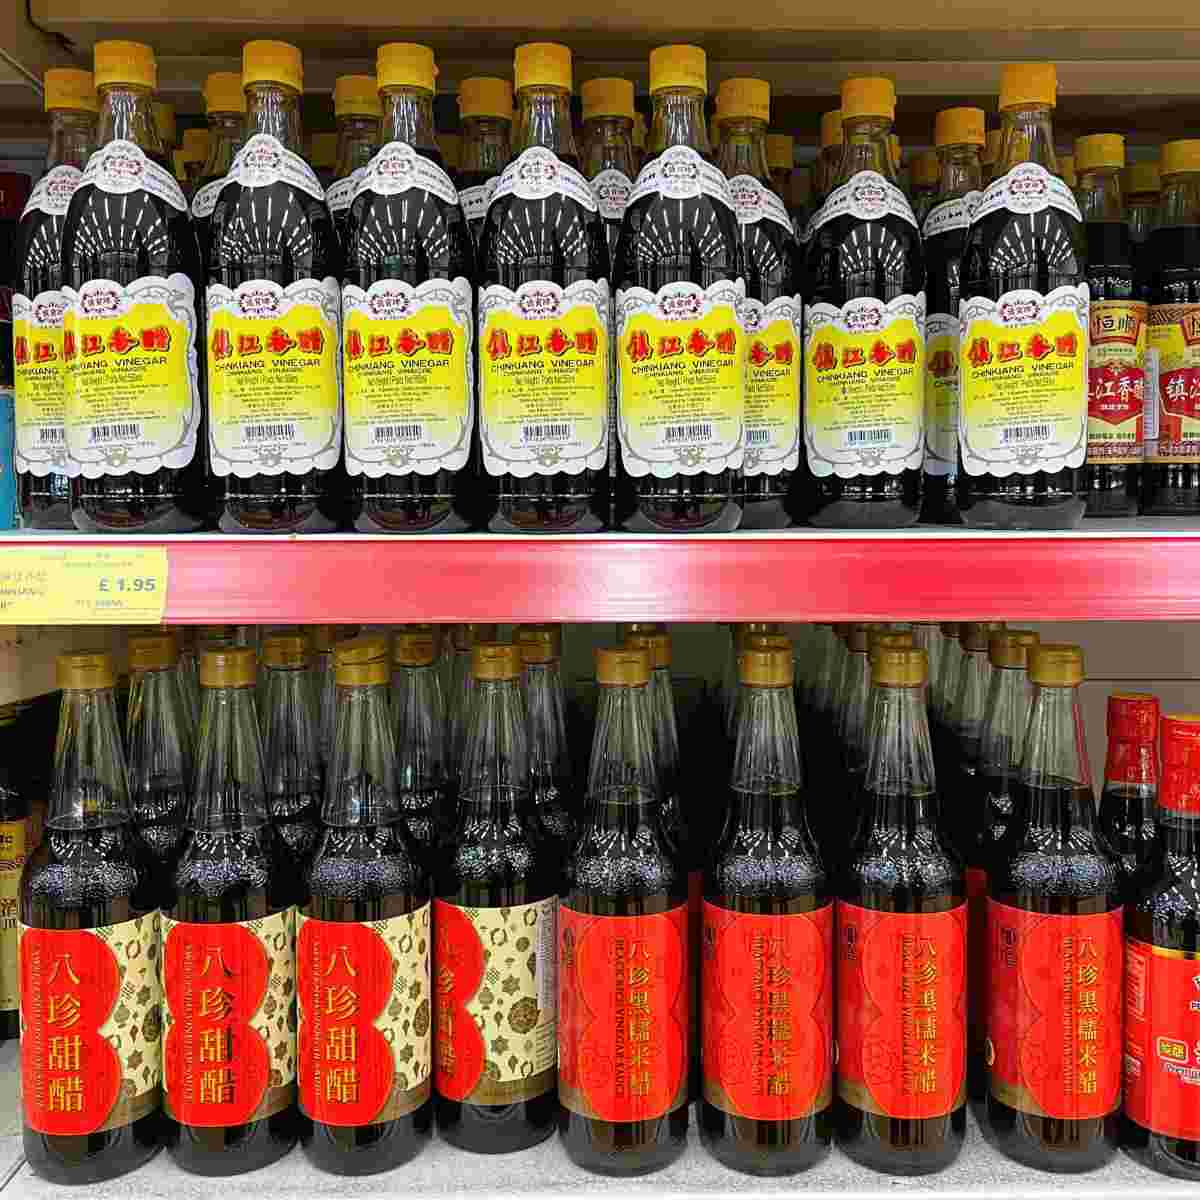 Bottles of Chinkiang brand bottles